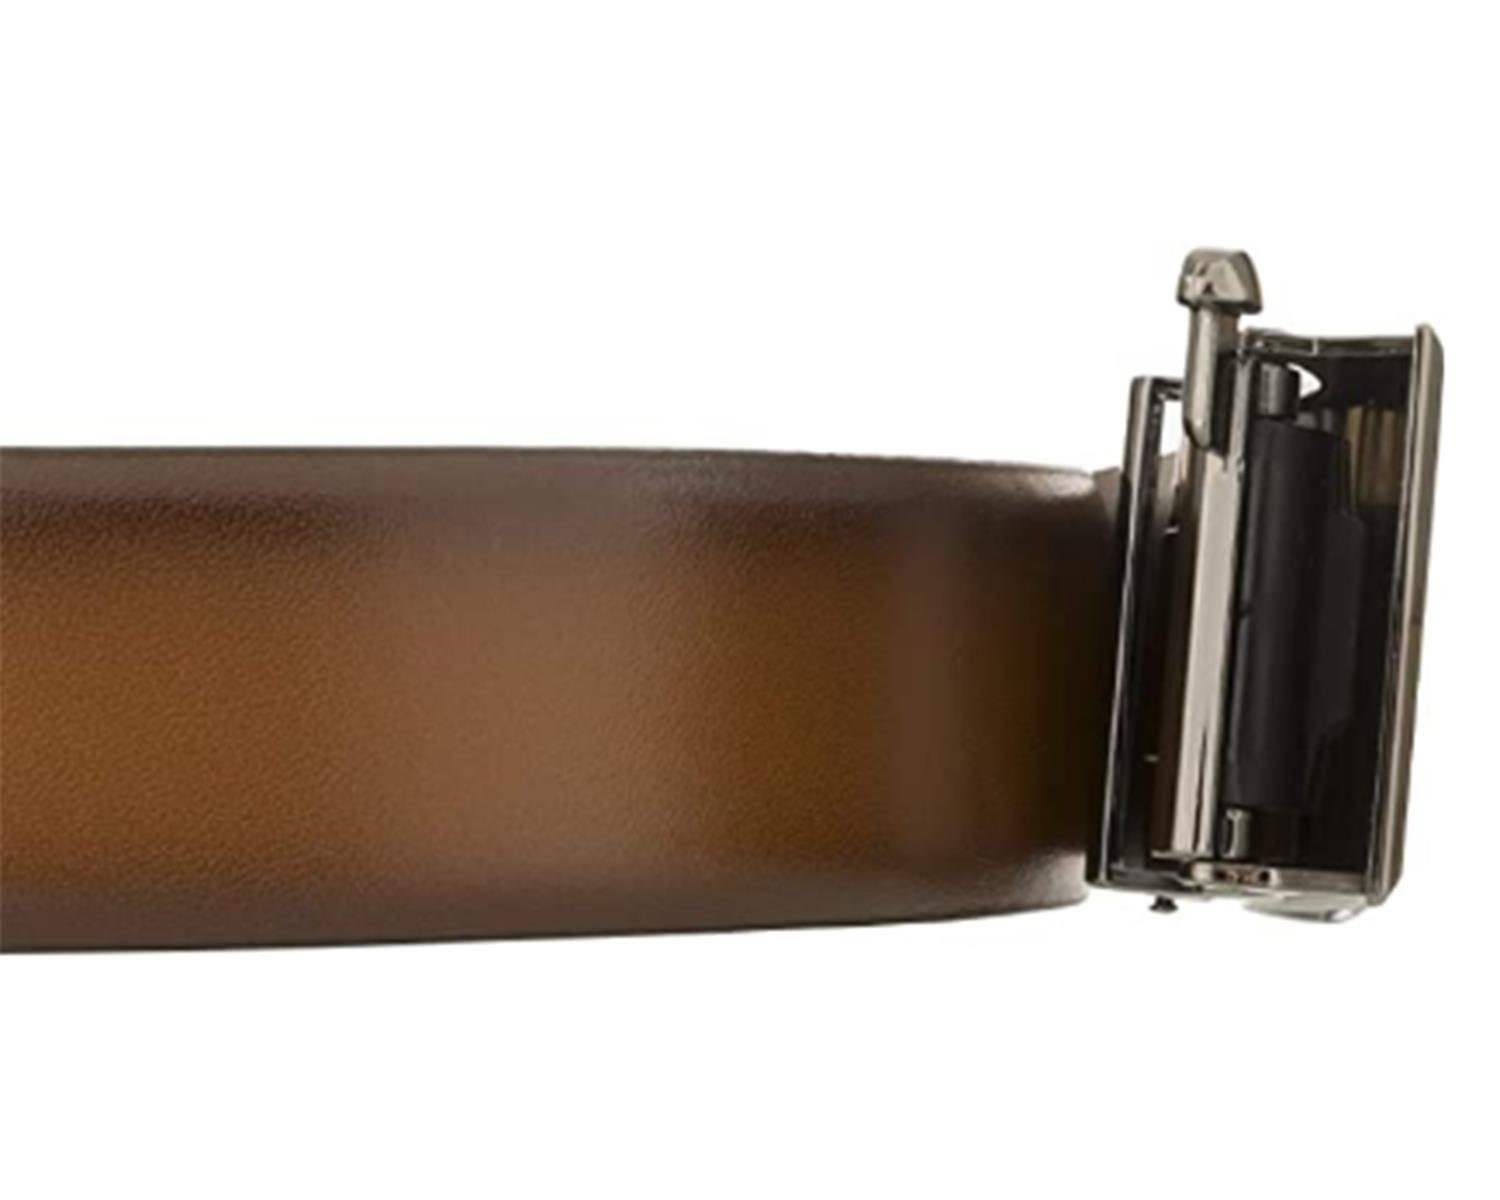 LLOYD Men’s Belts Ledergürtel Kantenfinish, LLOYD-Automatic-Gürtel cognac 35mm, kürzbar, bombiert